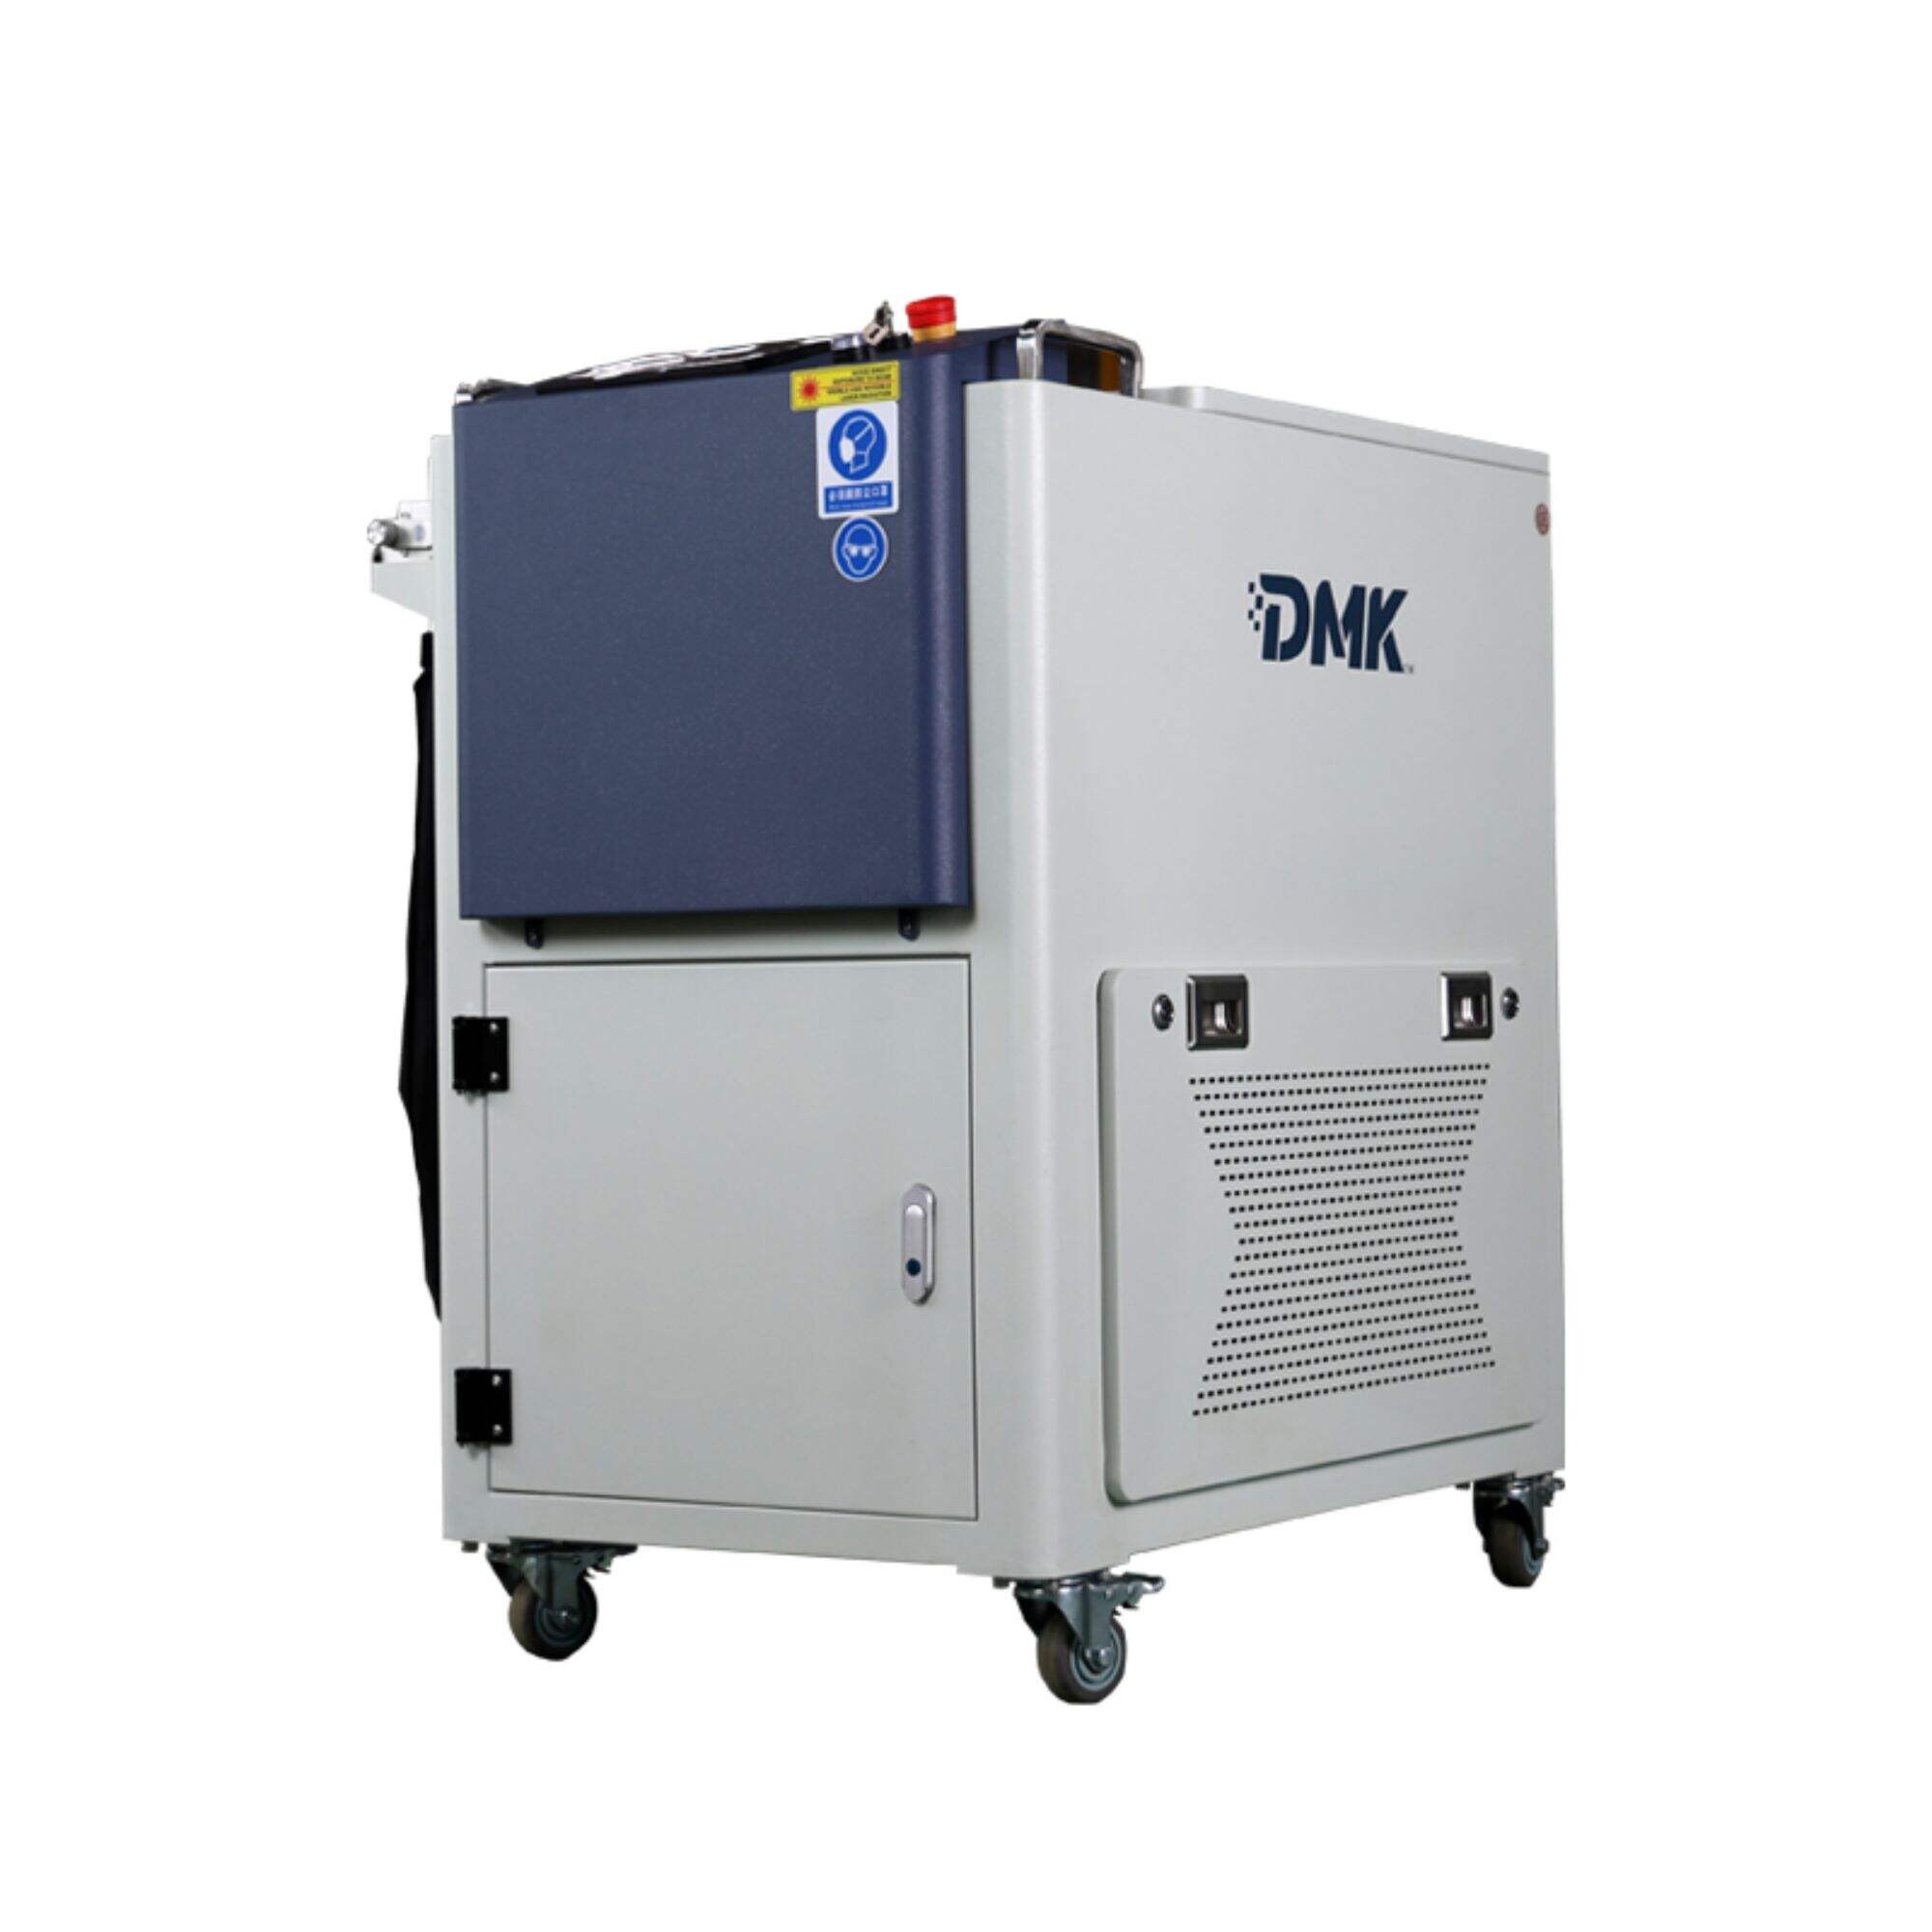 DMK Handheld 2000 W CW Laserätz-Reinigungsmaschine